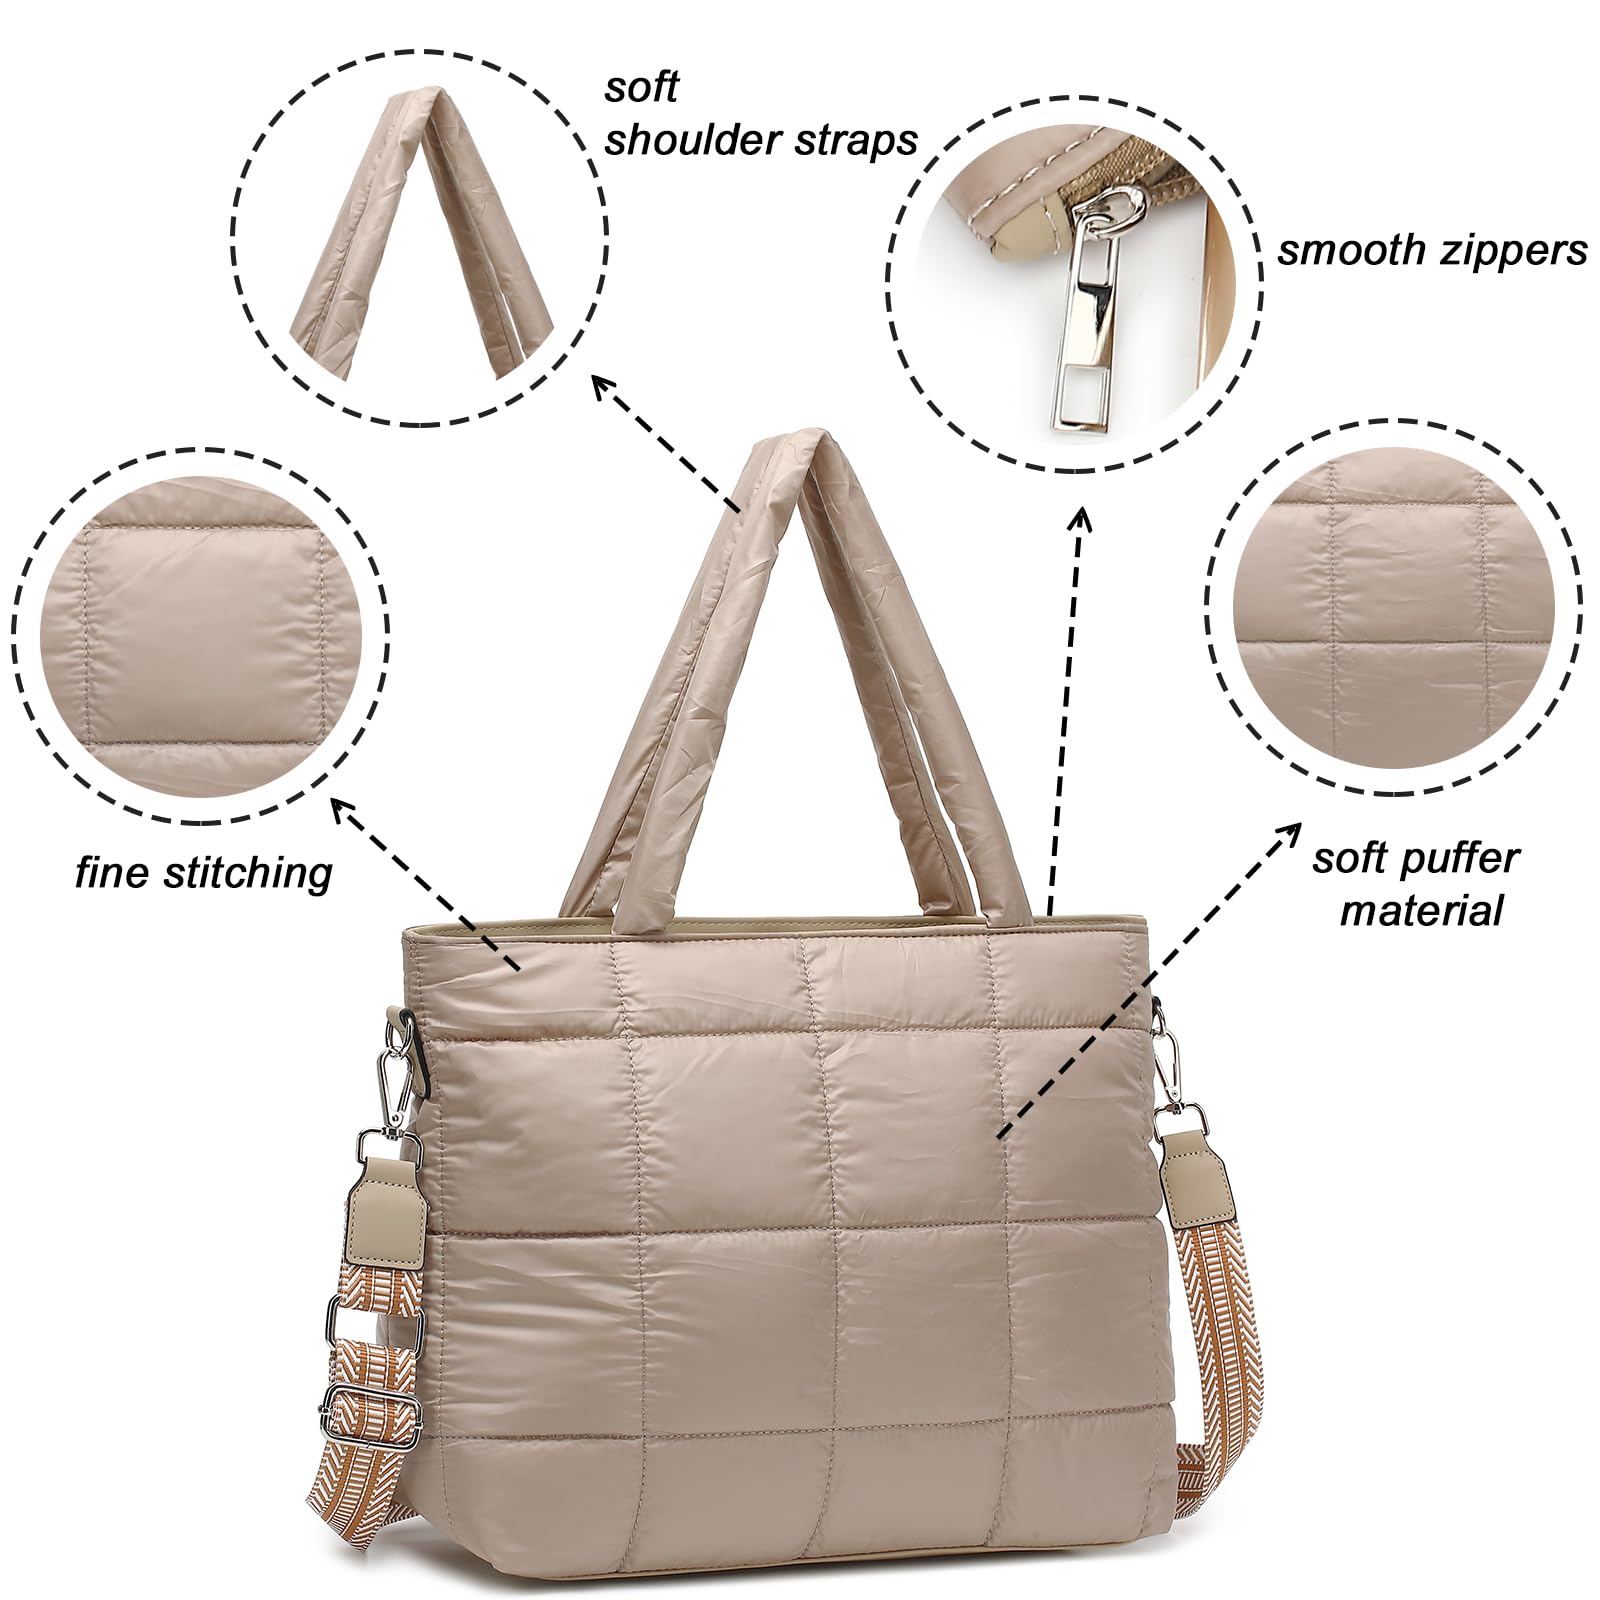 Women Purse Handbags Tote Bag Wholesale Product Details